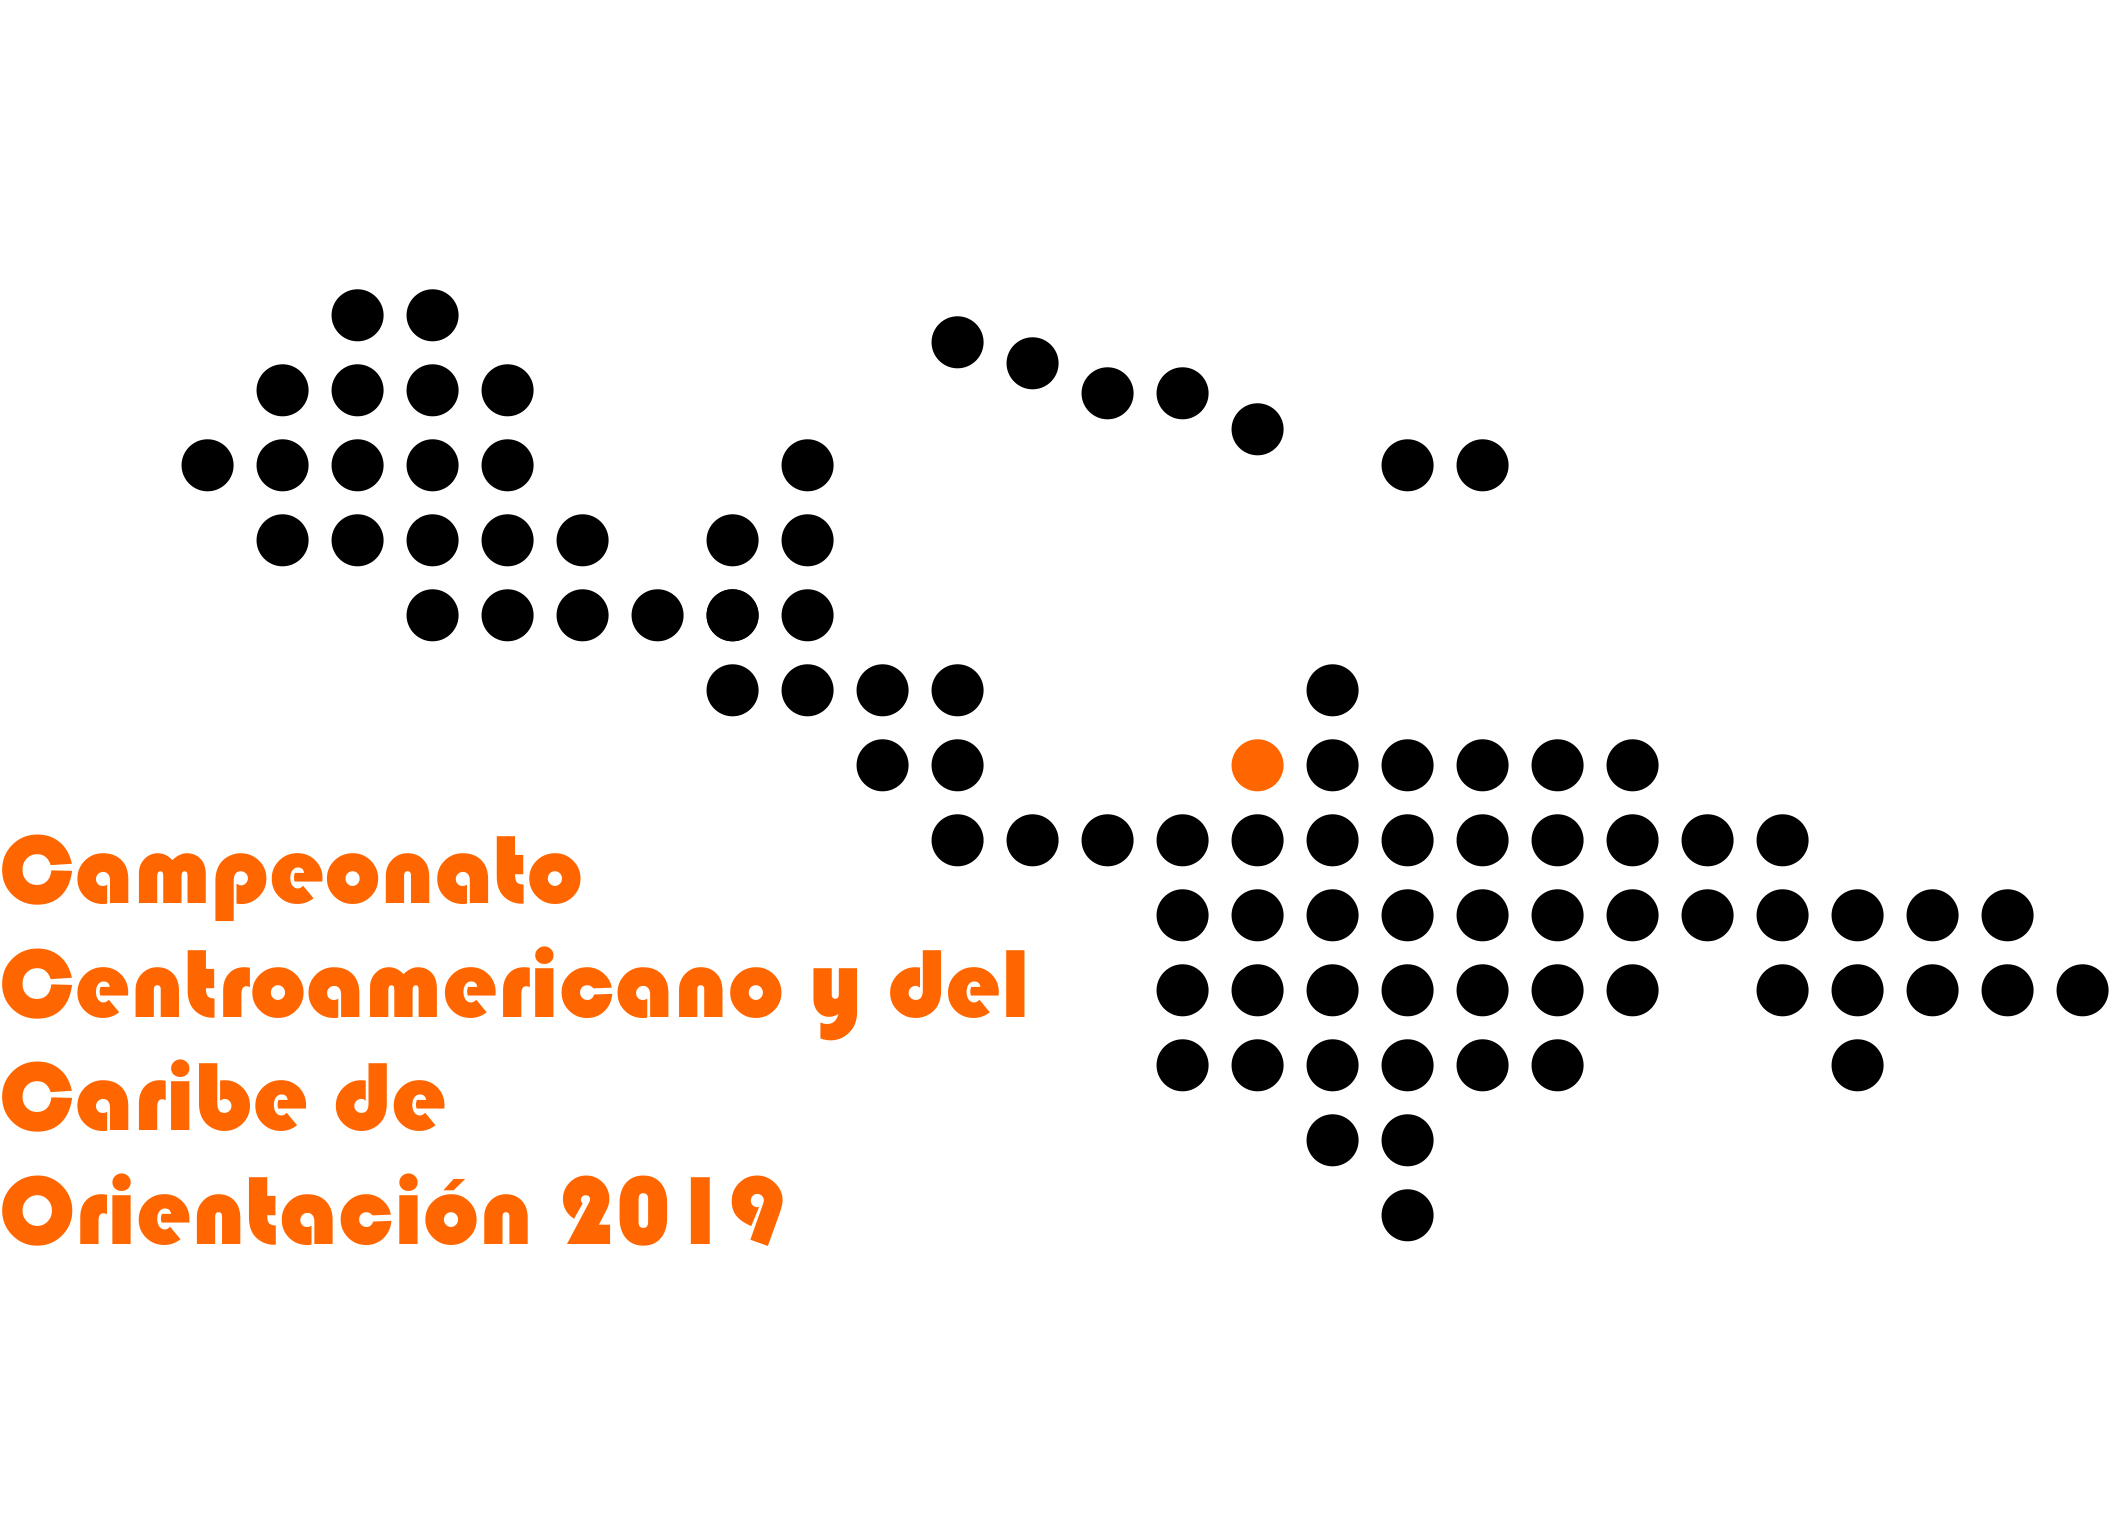 Campeonato Centroamericano y del Caribe de Orientación 2019